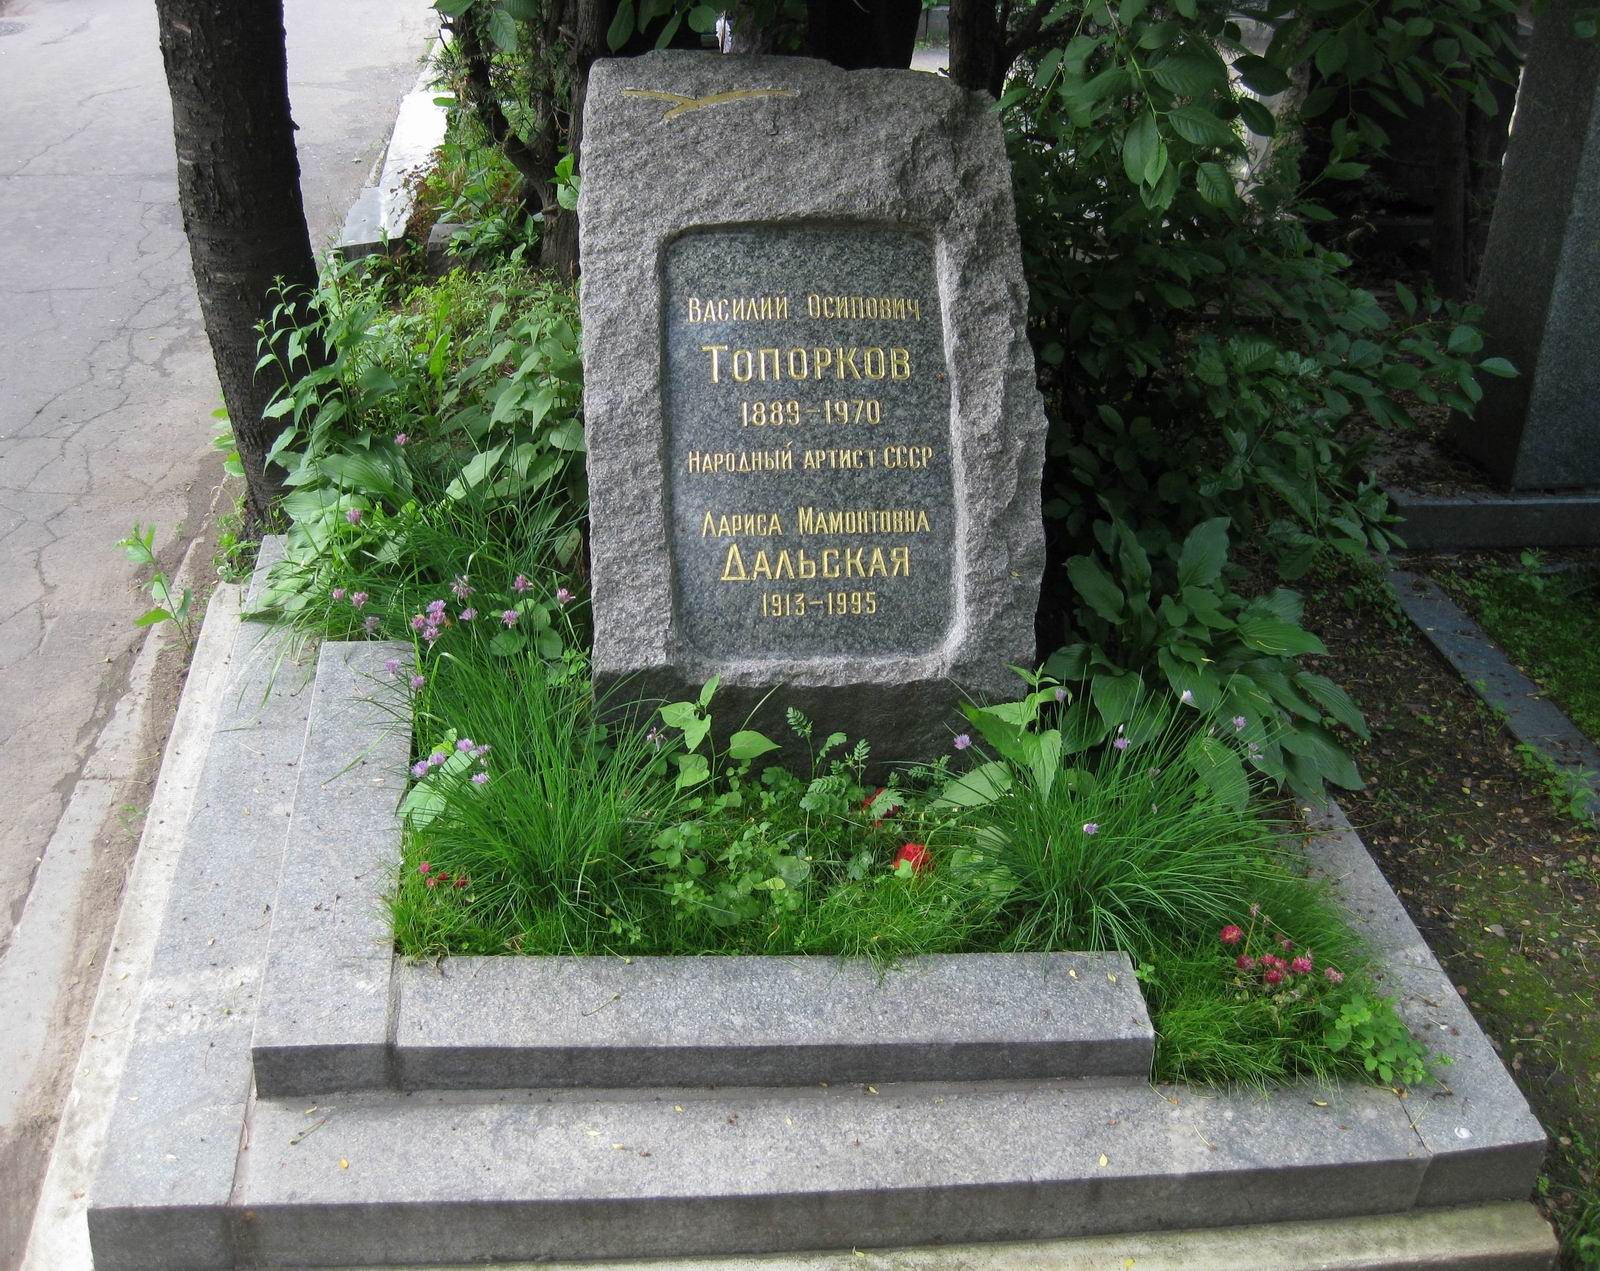 Памятник на могиле Топоркова В.О. (1889–1970), арх. Е.Розенблюм, на Новодевичьем кладбище (7–9–12).